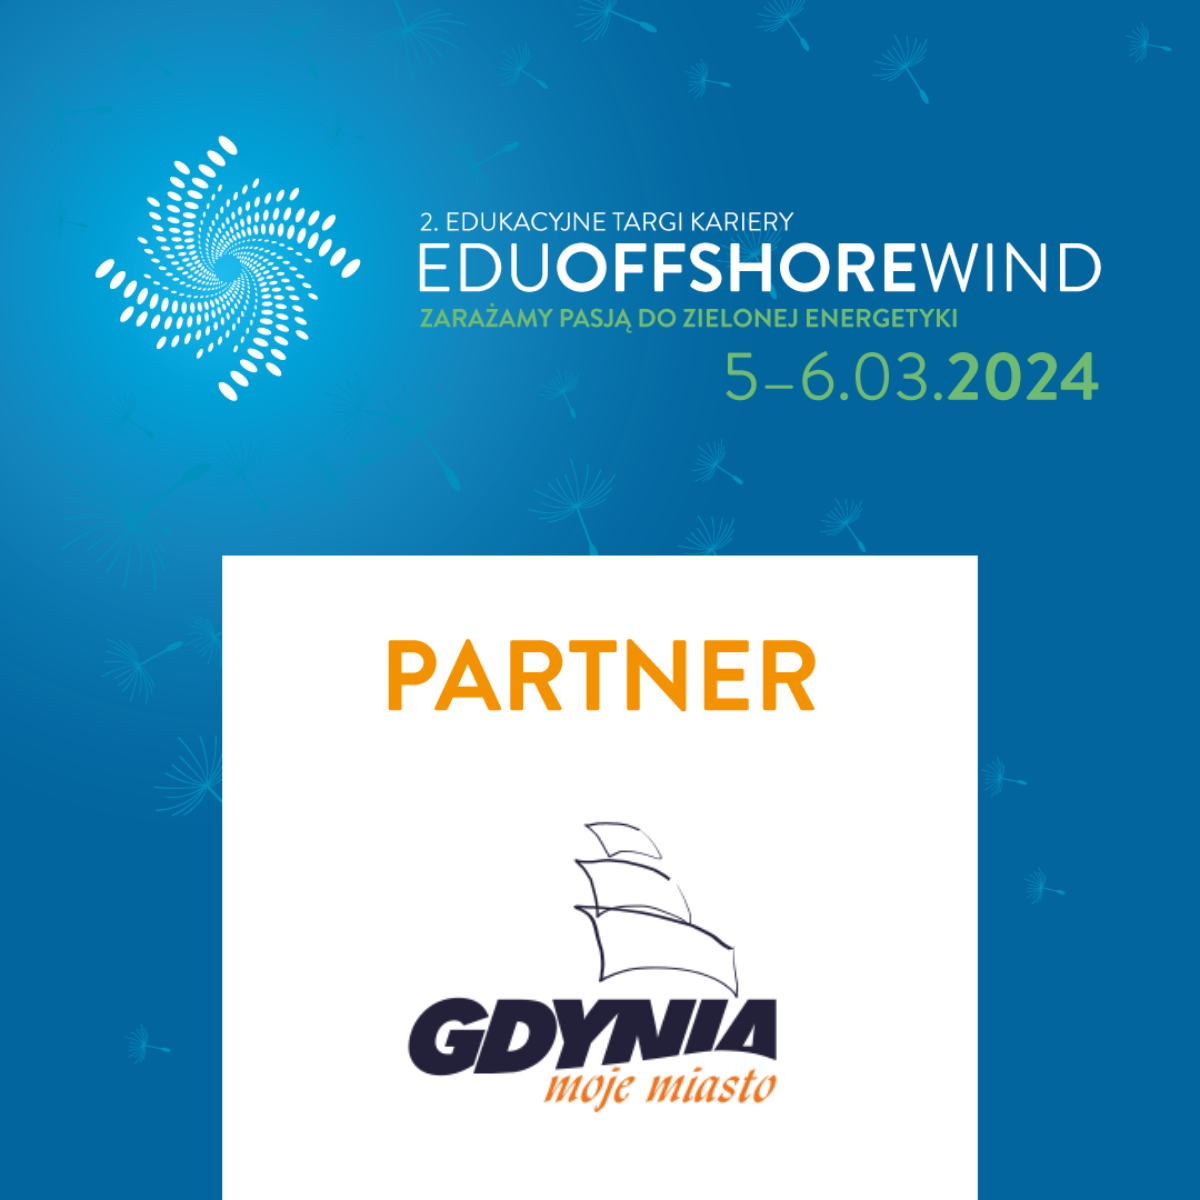 Na zdjęciu znajduje się informacja o organizowanych Targach Offshore Wind w Gdańsku. Na niebieskim tle jest biały kwadrat, w którym umieszczono napis Partnera, którym jest Miasto Gdynia.